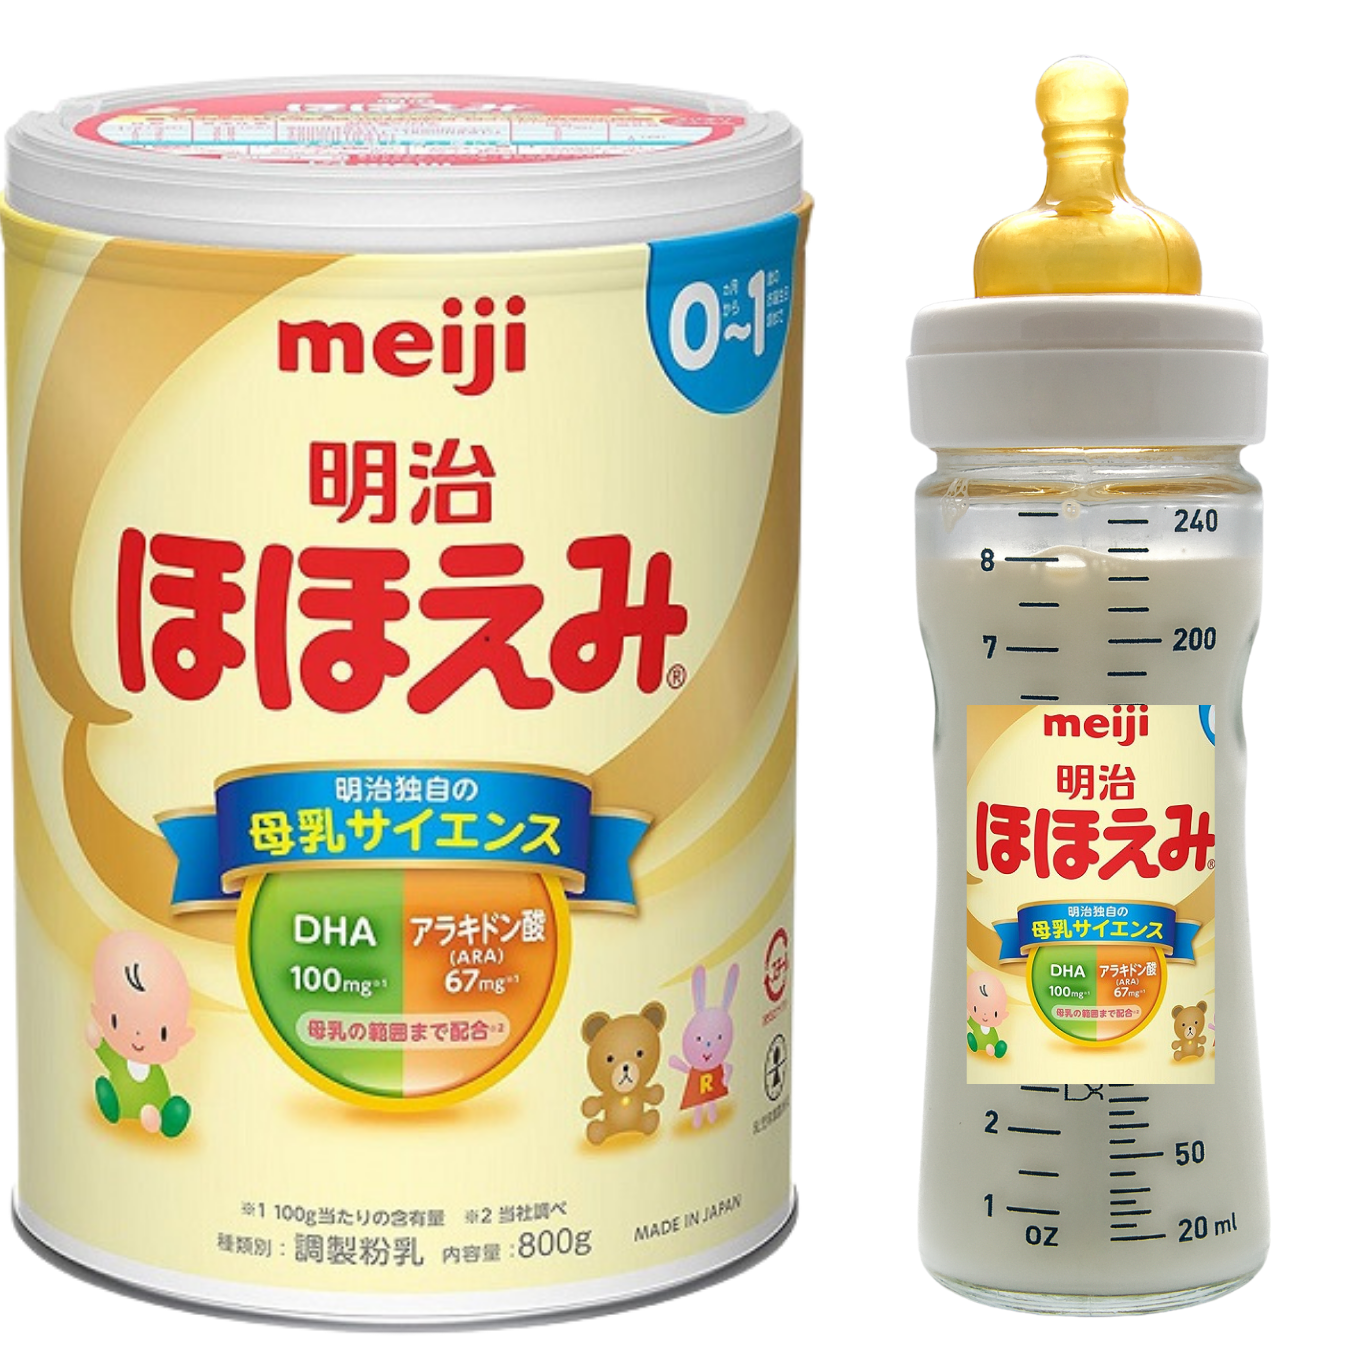 Sữa Nhật Cho Bé Tăng Cân Từ 0 Đến 1 Tuổi Meiji Hỗ Trợ Tăng Hệ Miễn Dịch, Tạo Hệ Tiêu Hóa Tốt Hấp Thụ Dưỡng Chất Hiệu Quả Giúp Bé Phát Triển Cân Đối Nhất Cả Về Chiều Cao, Cân Nặng, Trí Não - 1 Hộp